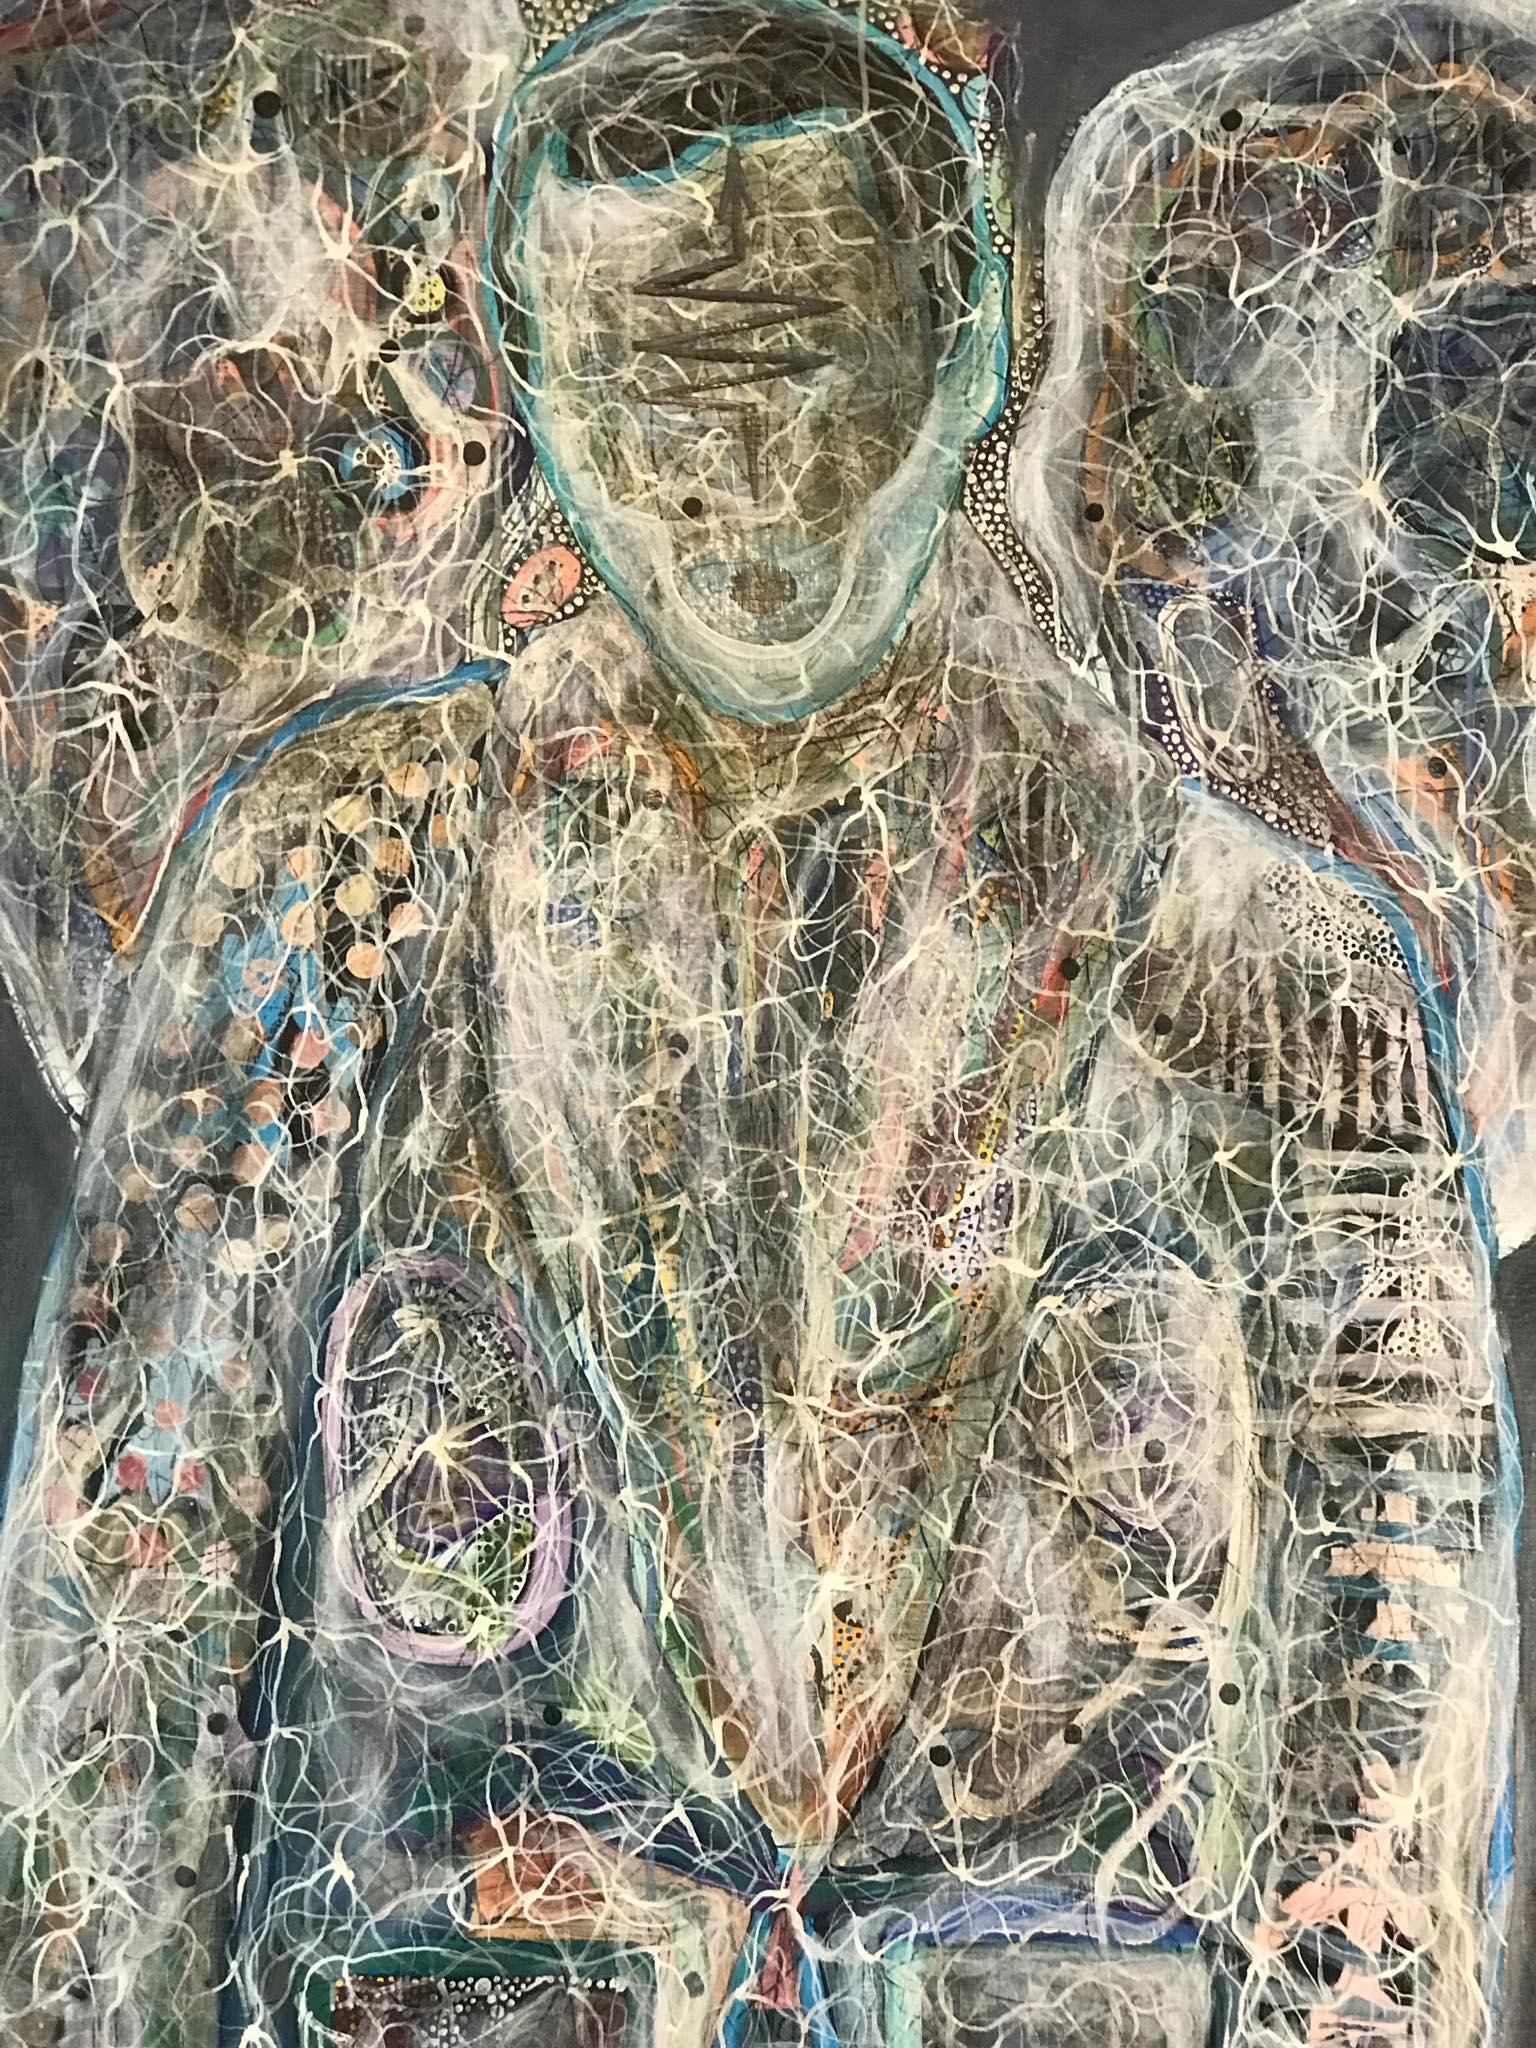 Luminous 170" von Sergey Morshch - abstrakte figurative Malerei, ein Porträt eines Engels, eines spirituellen Wesens. Die surrealistische Darstellung der Realität auf der Grundlage von Energiefeldern ist das Hauptthema der konzeptionellen Arbeiten